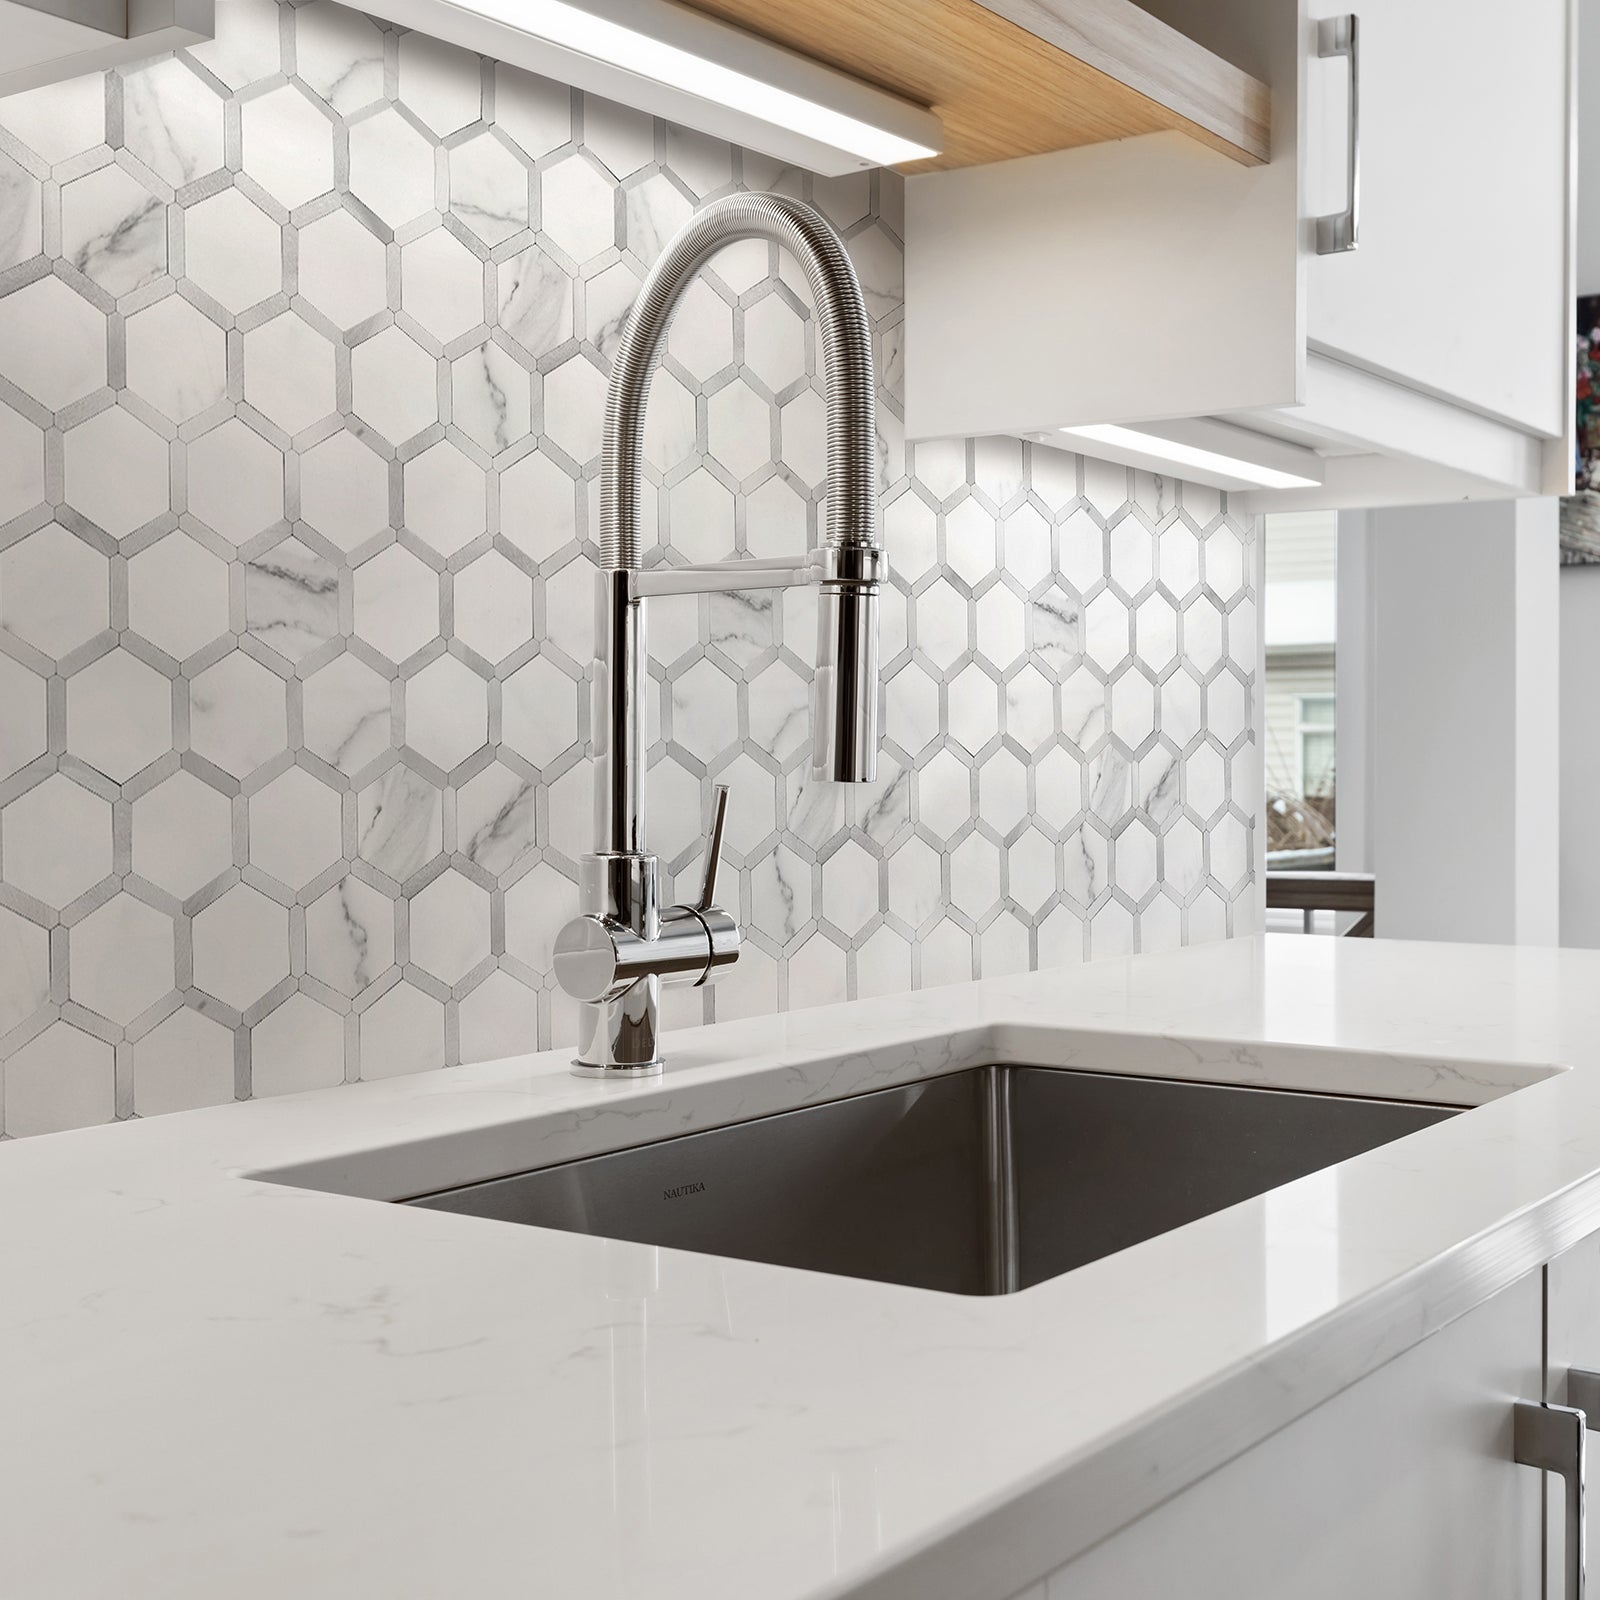 kitchen backsplash tile